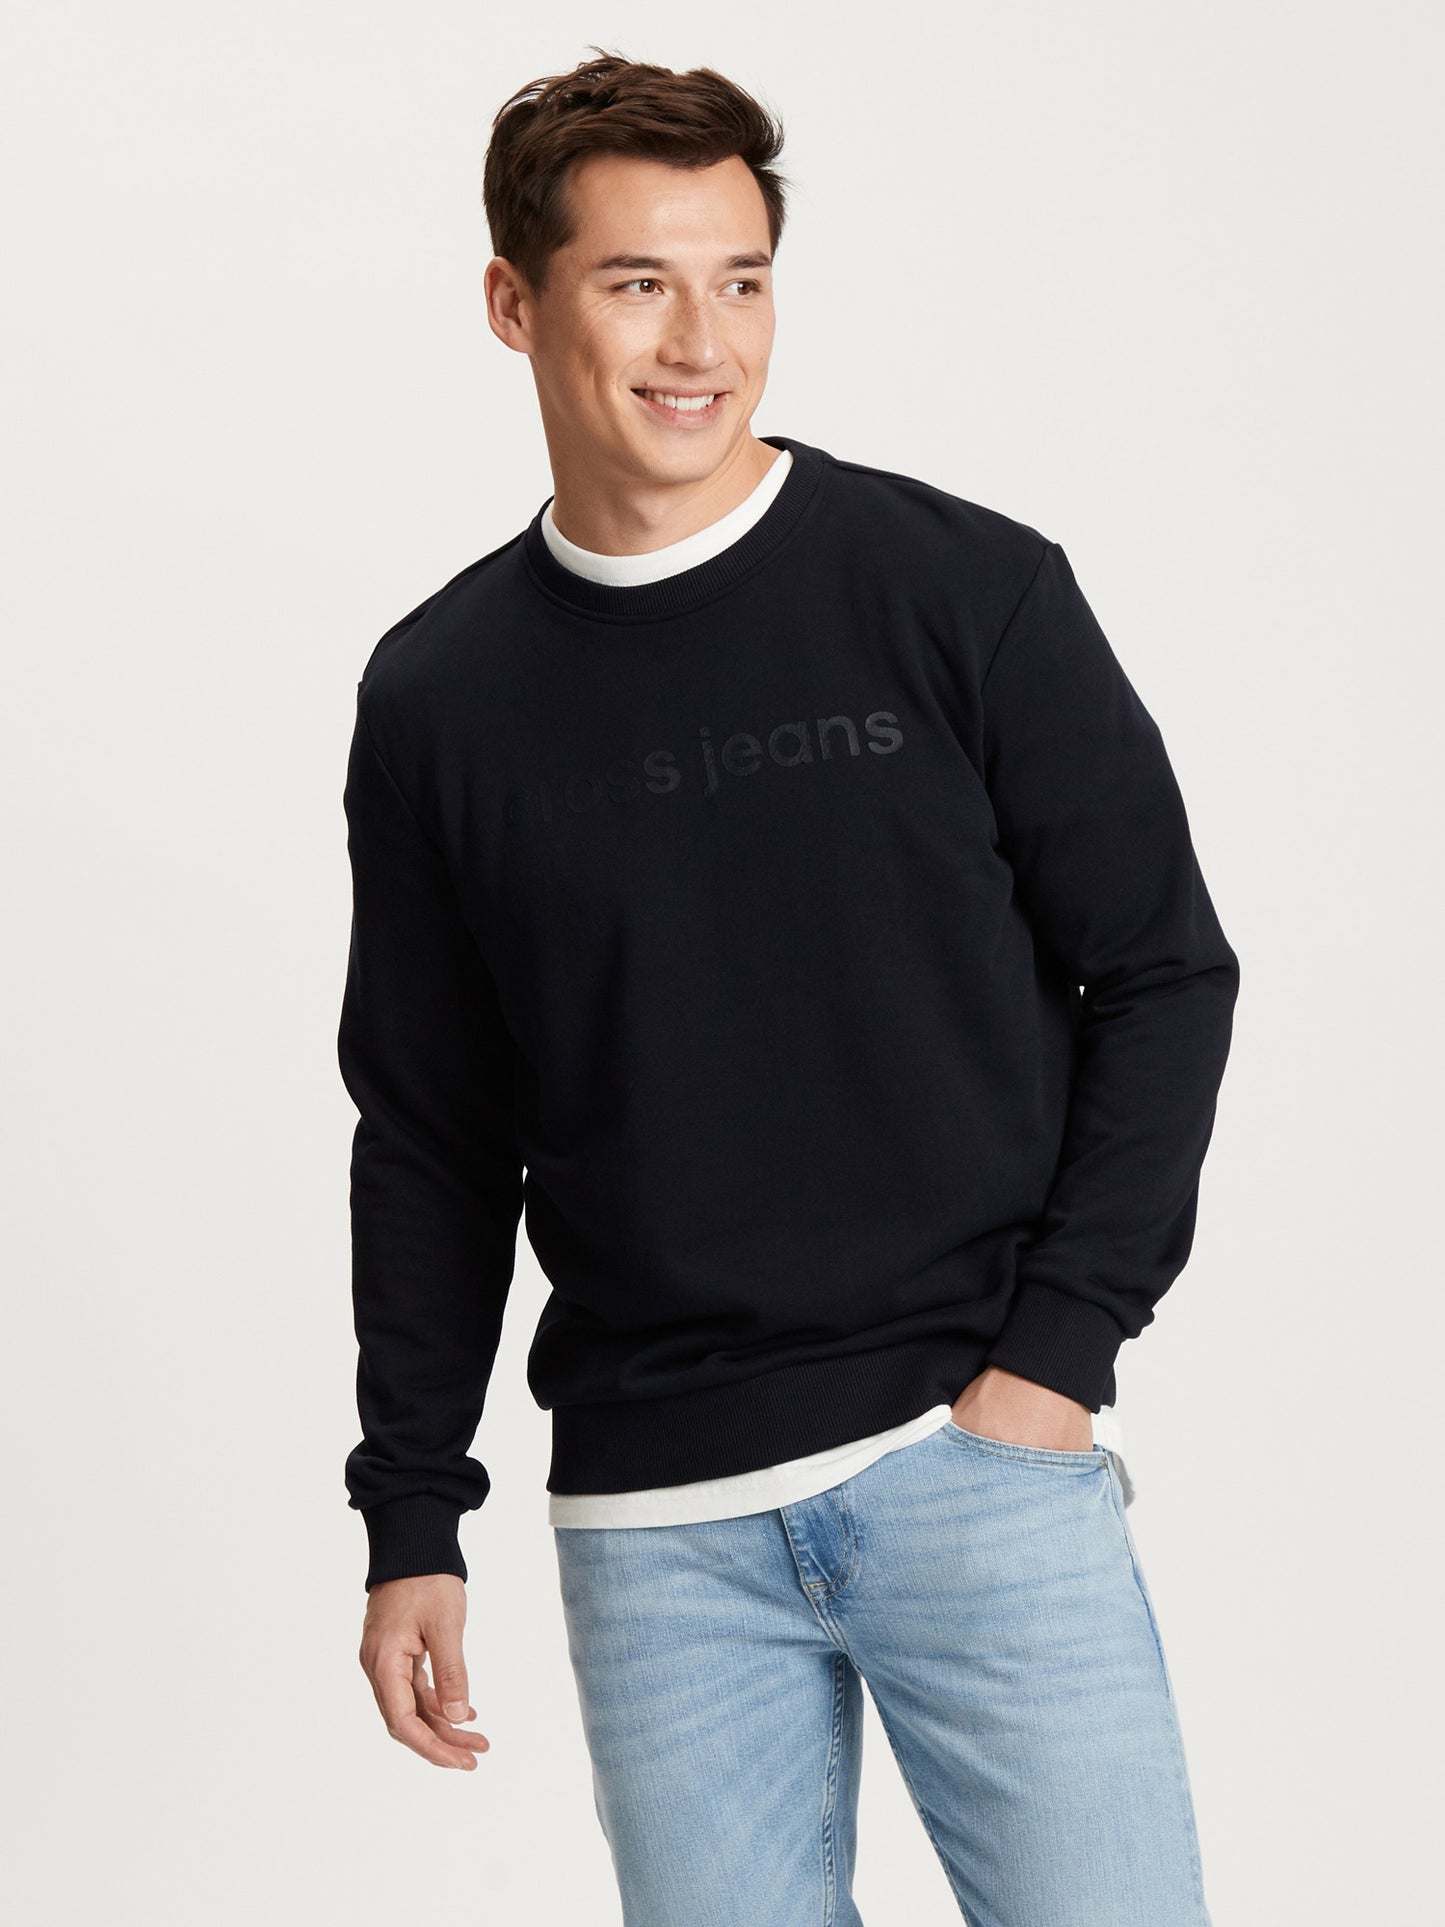 Men's regular sweatshirt with label print in navy blue.